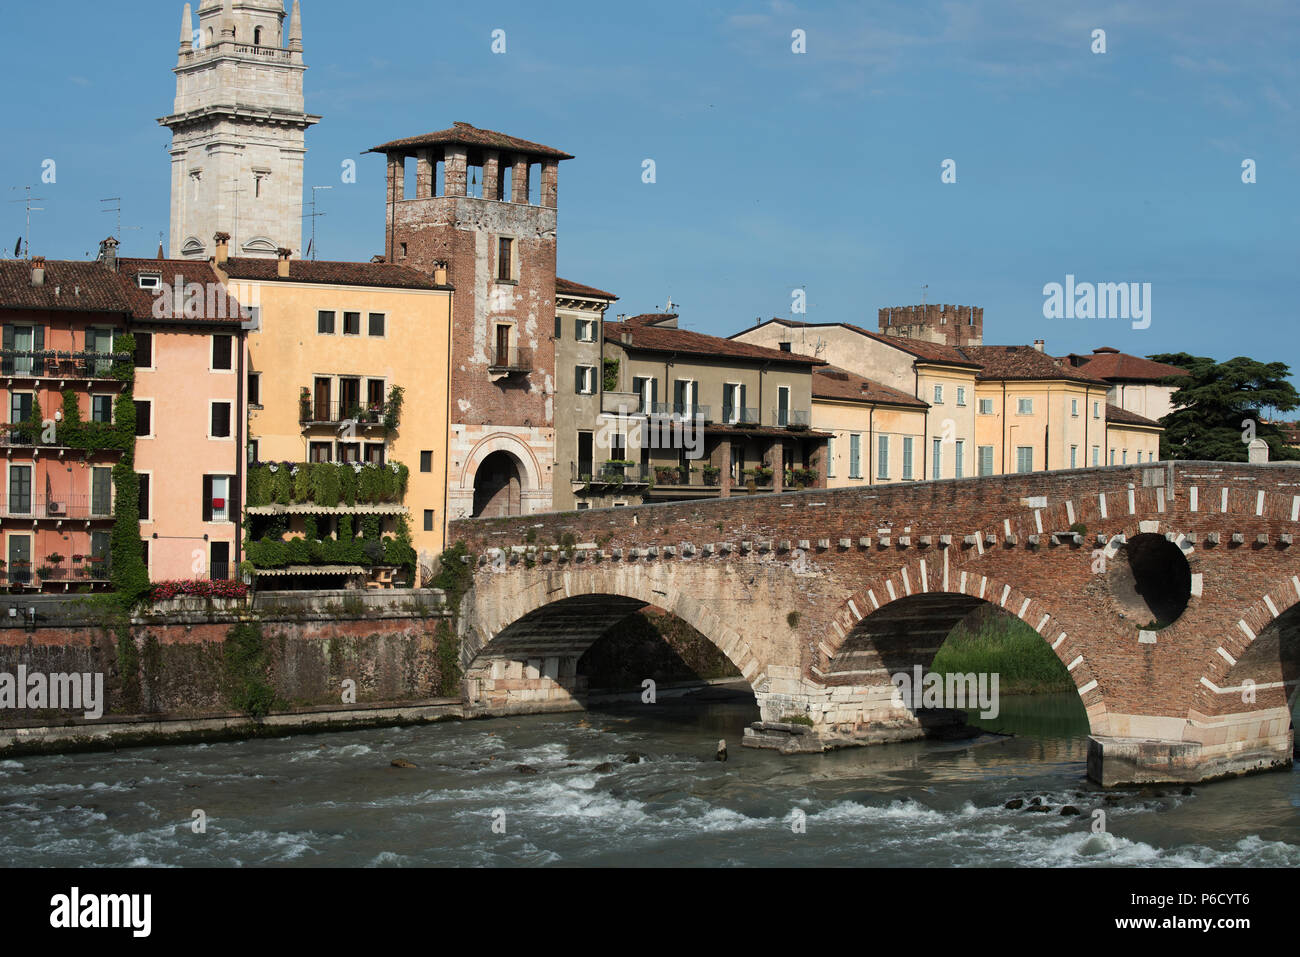 Il Ponte Pietra (Italiano per 'Stone ponte"), una volta noto come Pons Marmoreus, è un arco romano ponte che attraversa il fiume Adige a Verona, Italia. Il Foto Stock